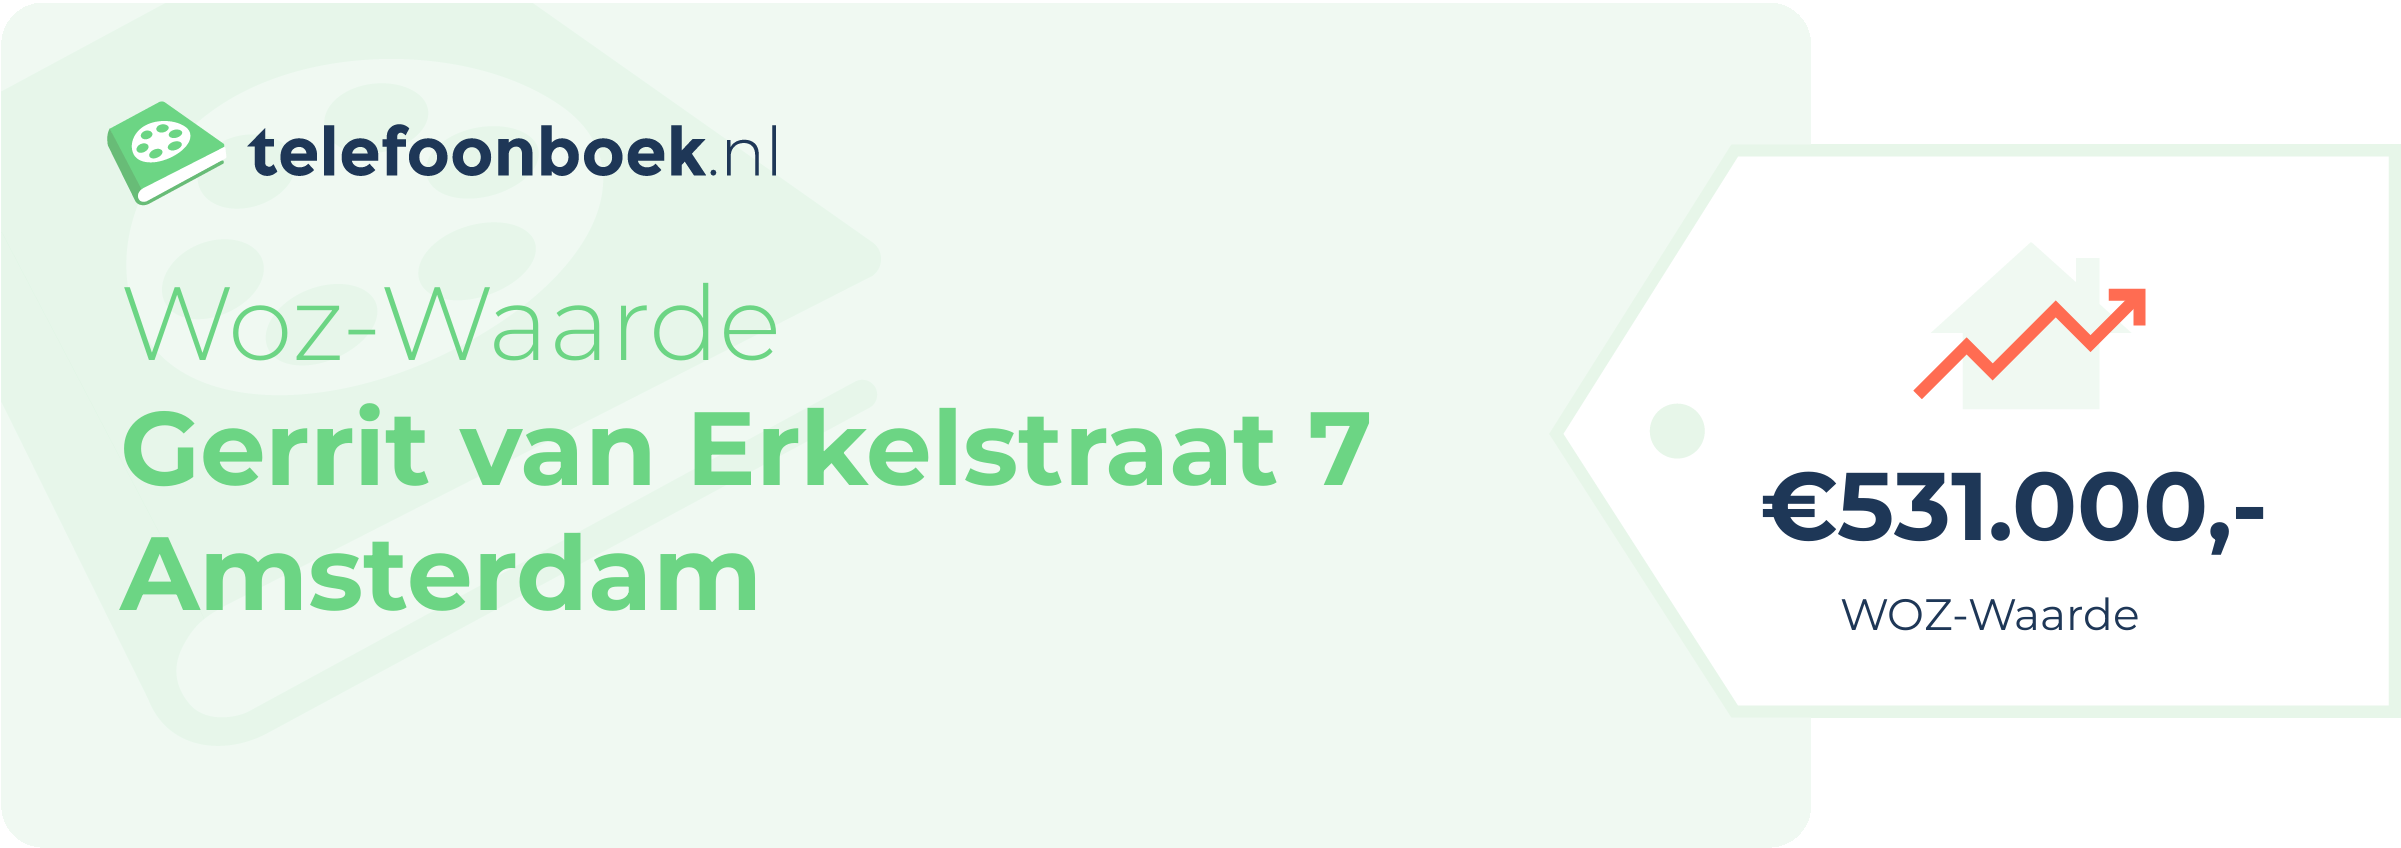 WOZ-waarde Gerrit Van Erkelstraat 7 Amsterdam